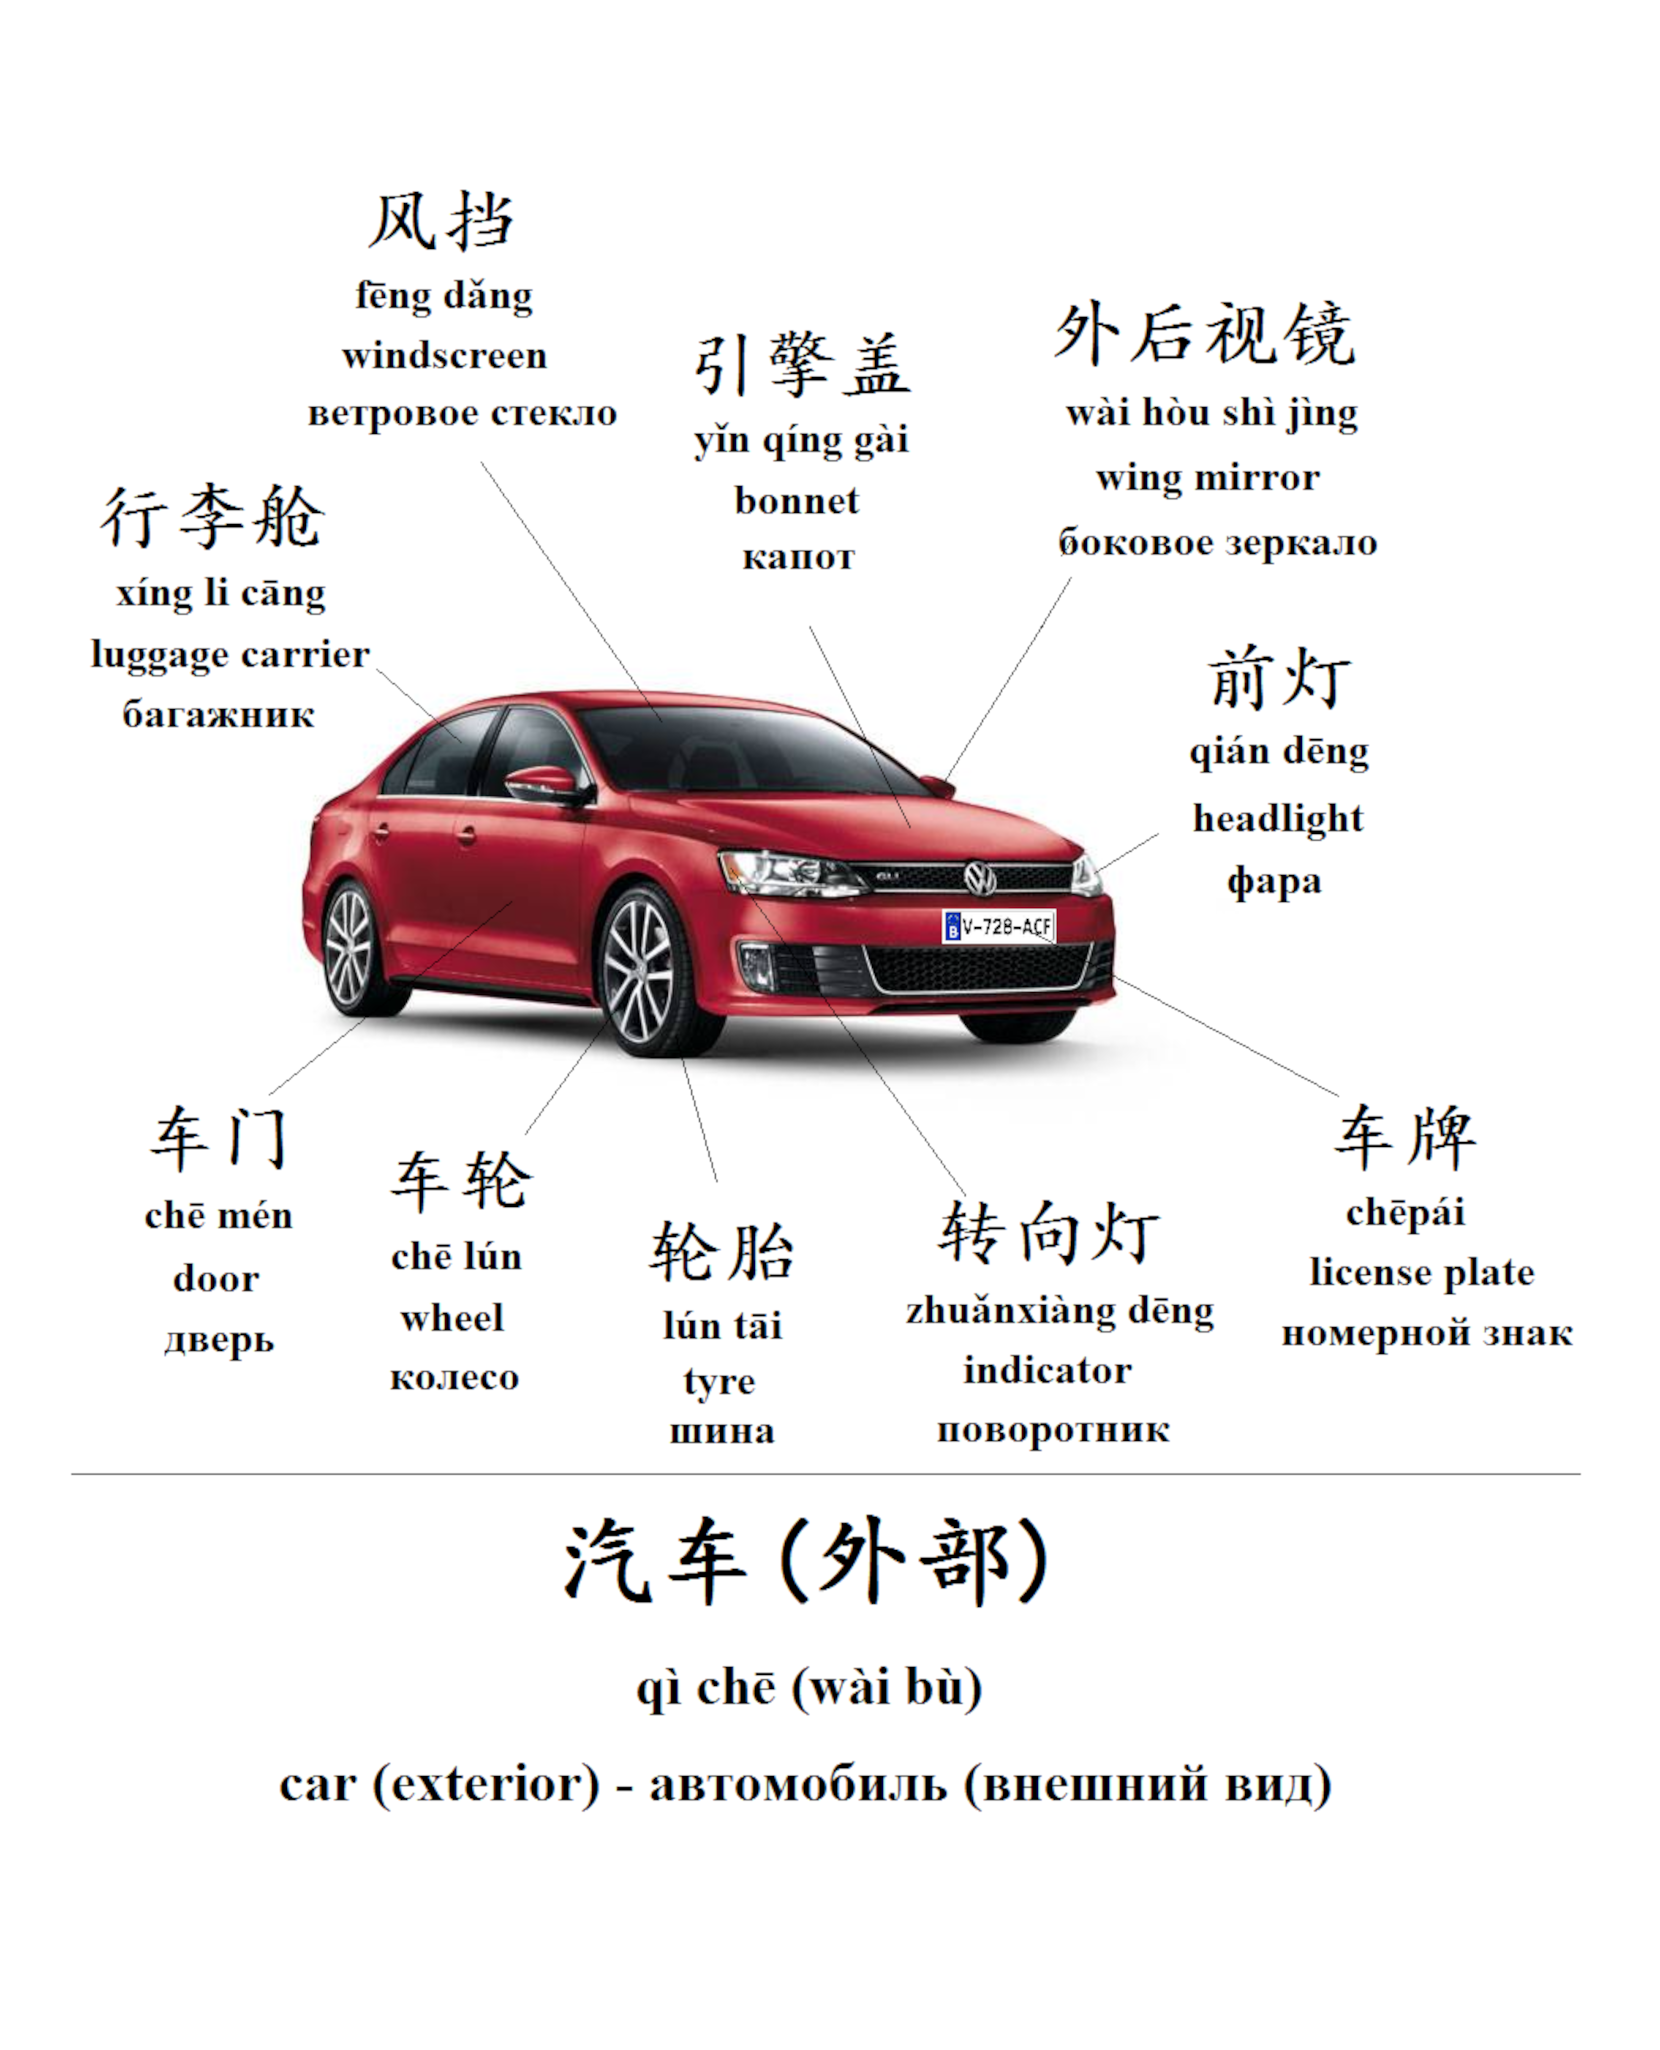 Примеры запчастей и их наименования на китайском и английском. Источник: pinterest.com